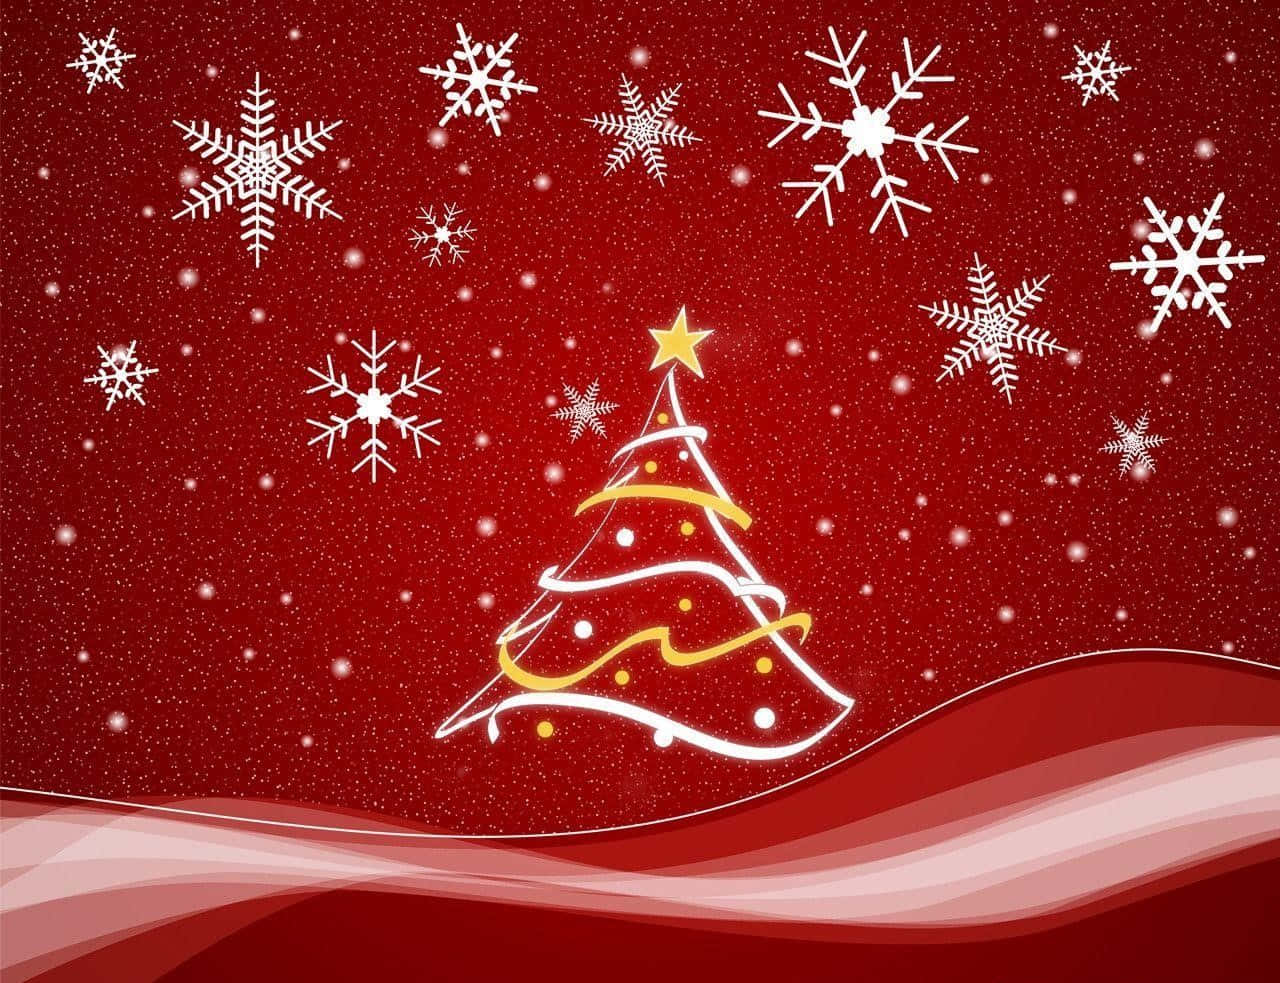 Sumérgeteen El Espíritu Festivo Y Disfruta De Las Alegrías De La Navidad Estética Roja. Fondo de pantalla